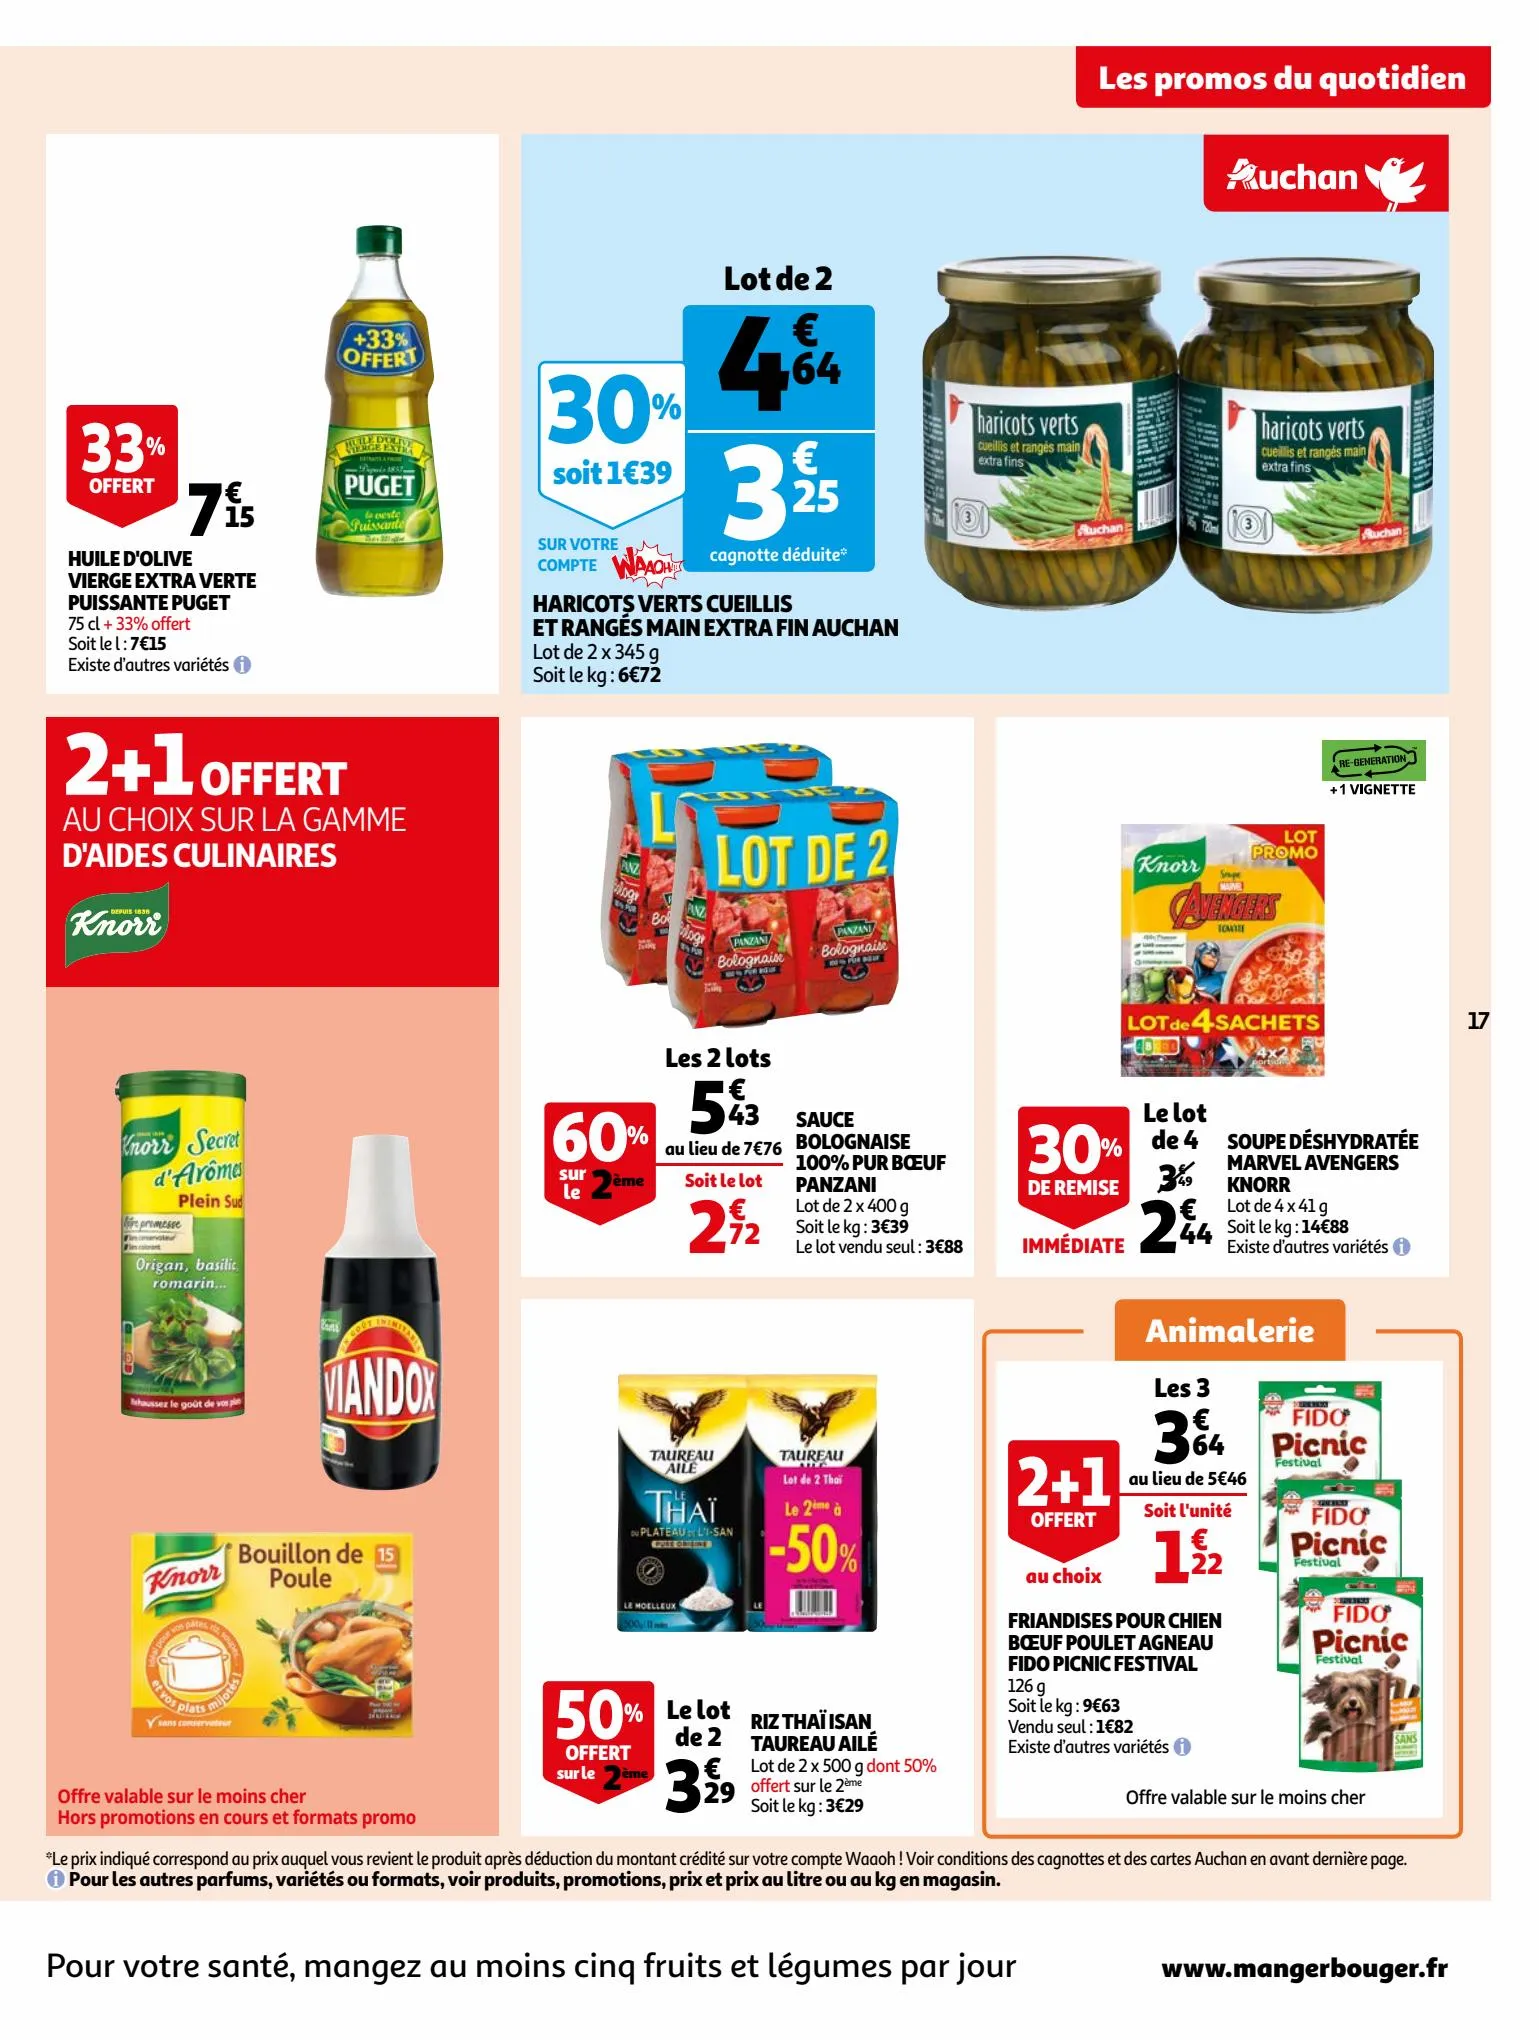 Catalogue Bio ou filière responsable, nos produits ont tout bon dans votre supermarché, page 00017